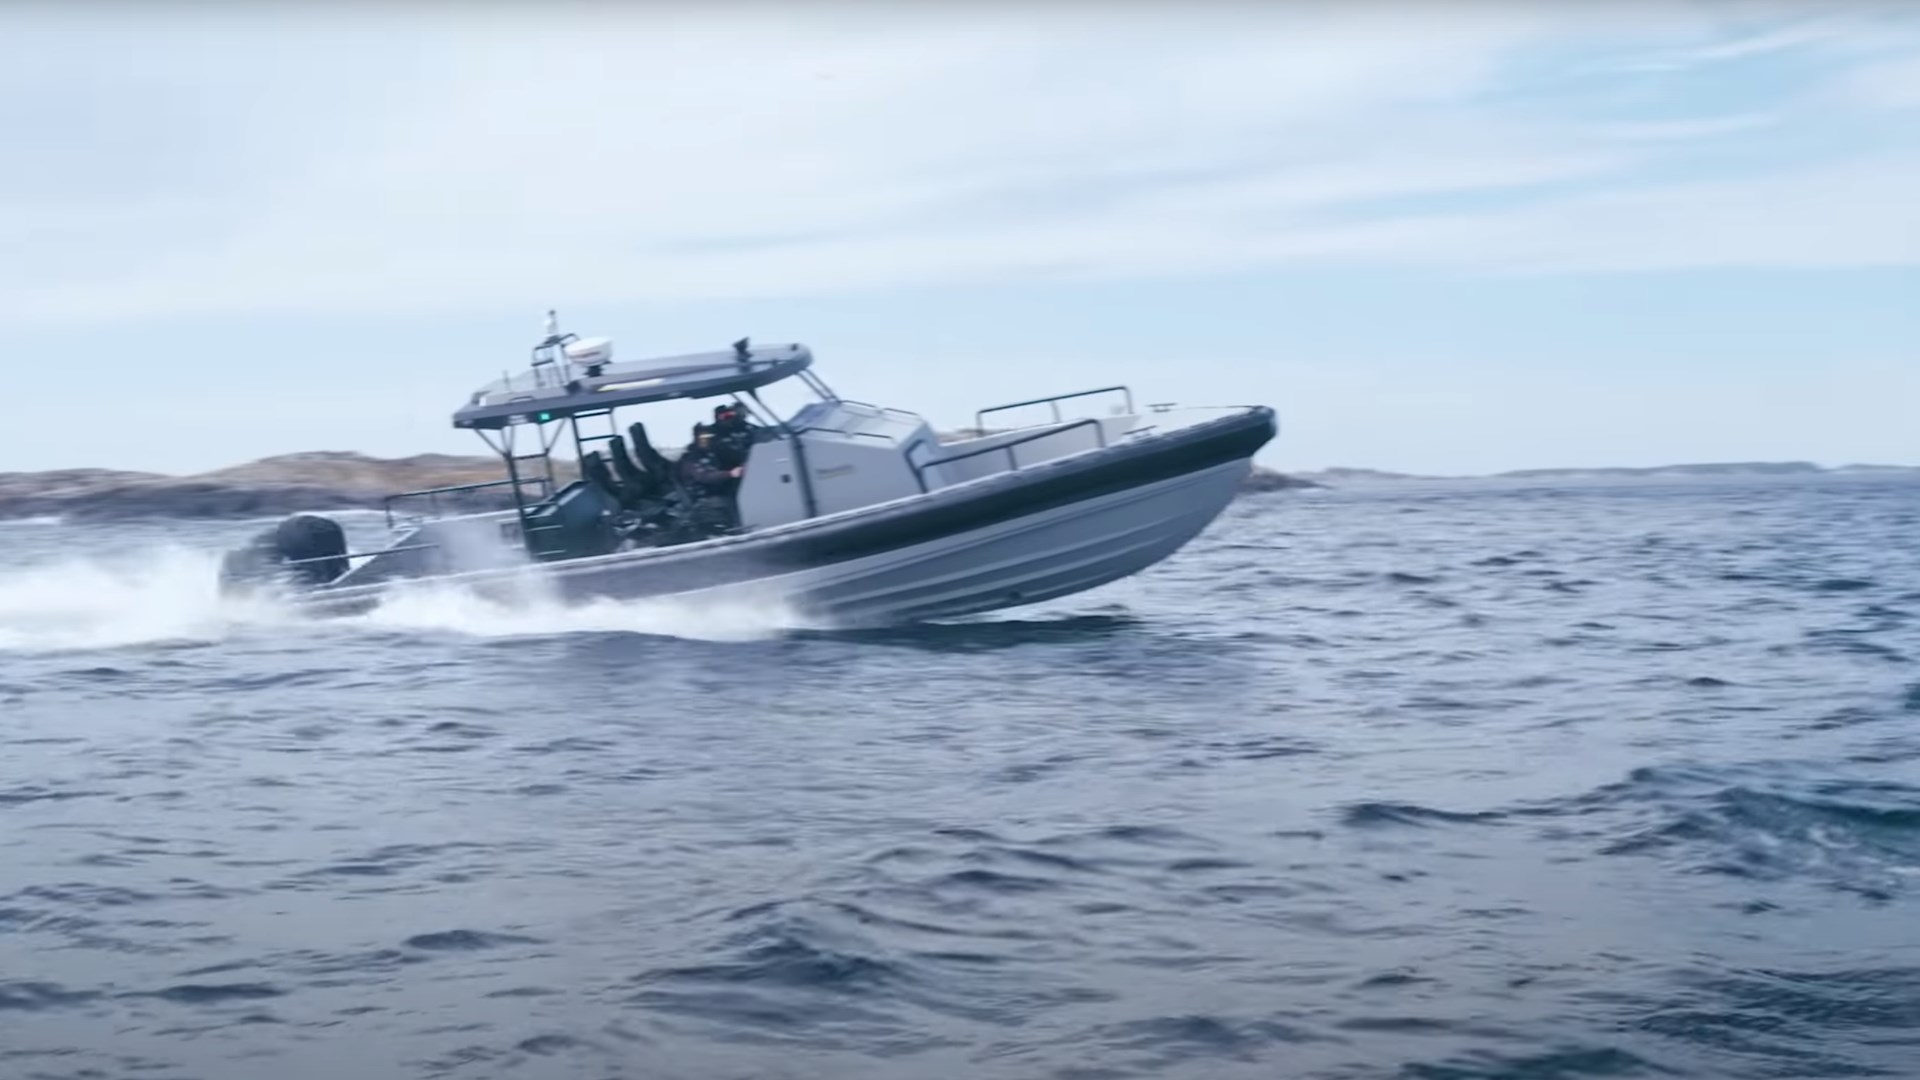 O Αρχηγός ΓΕΕΘΑ δοκίμασε με ΟΥΚάδες το νέο σκάφος των Ειδικών Δυνάμεων – ΦΩΤΟ